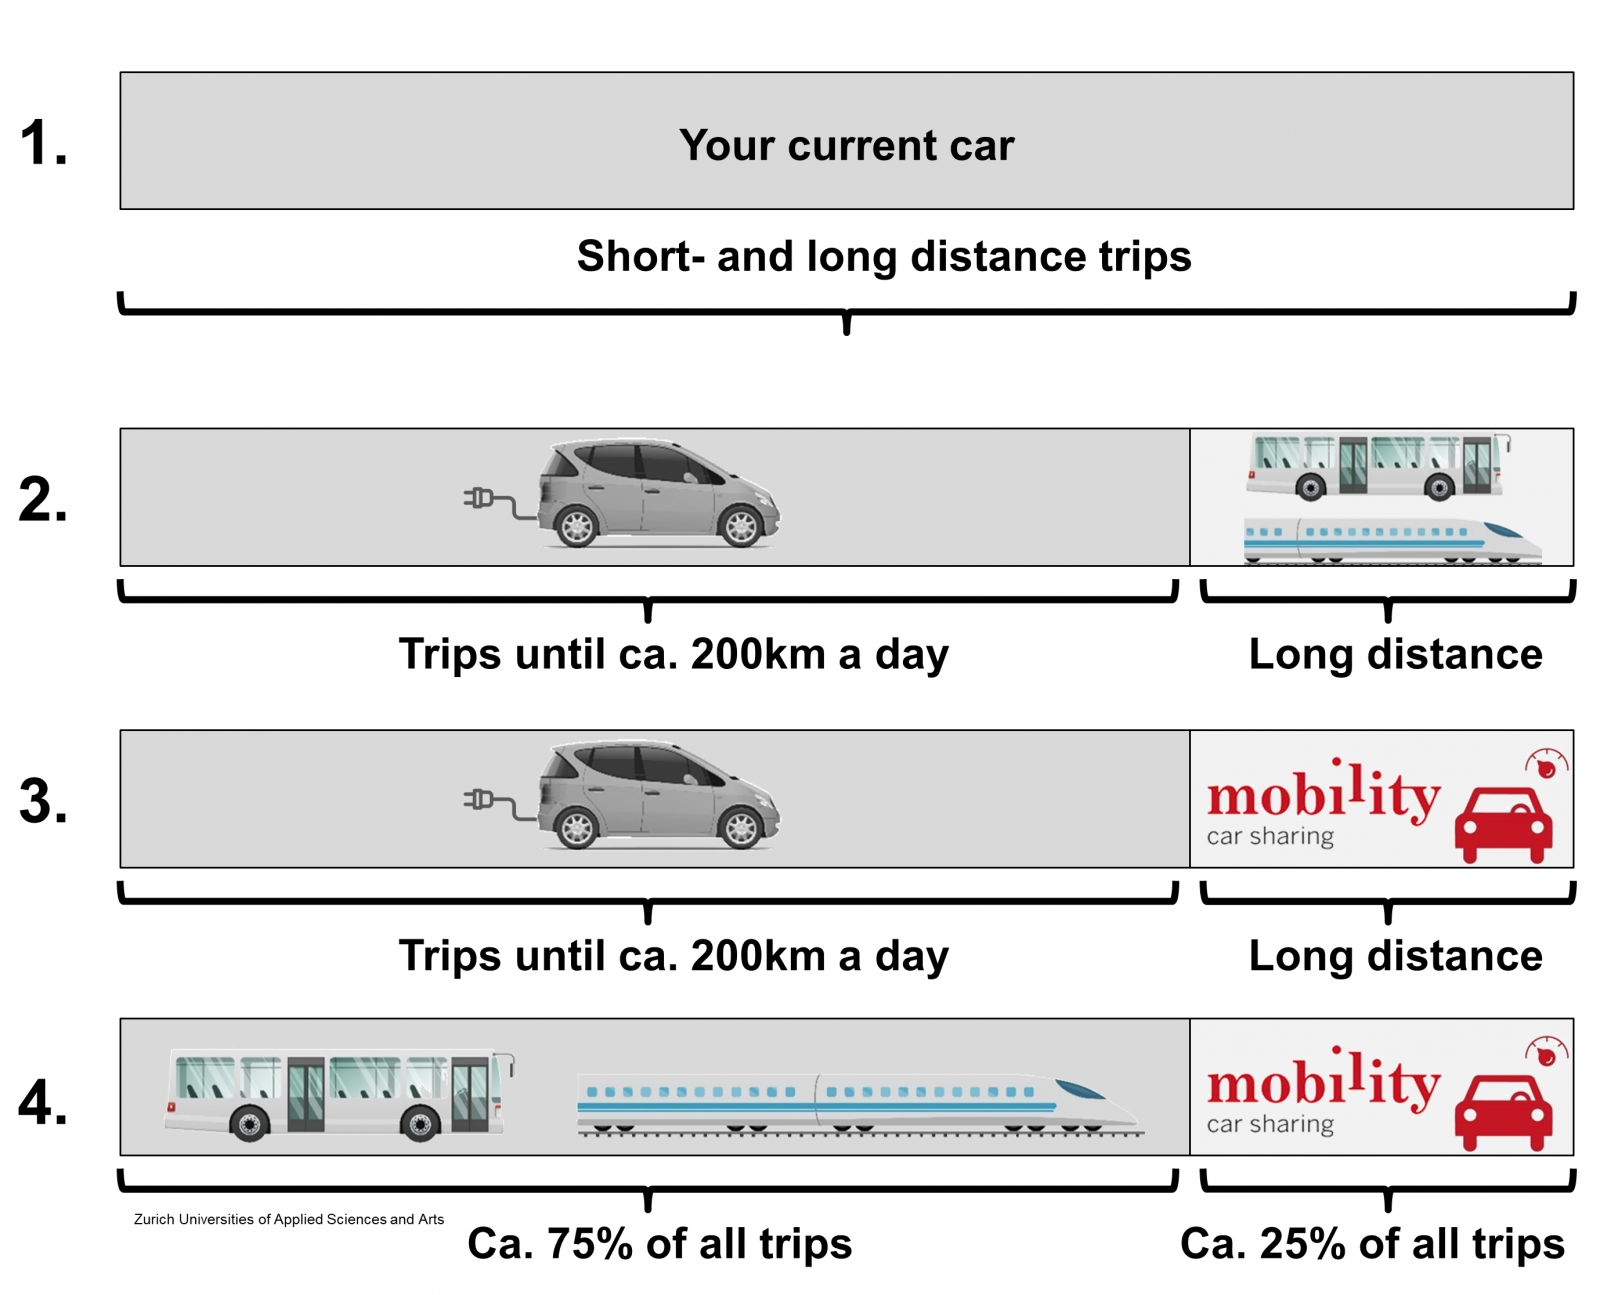 cons clarify mobility